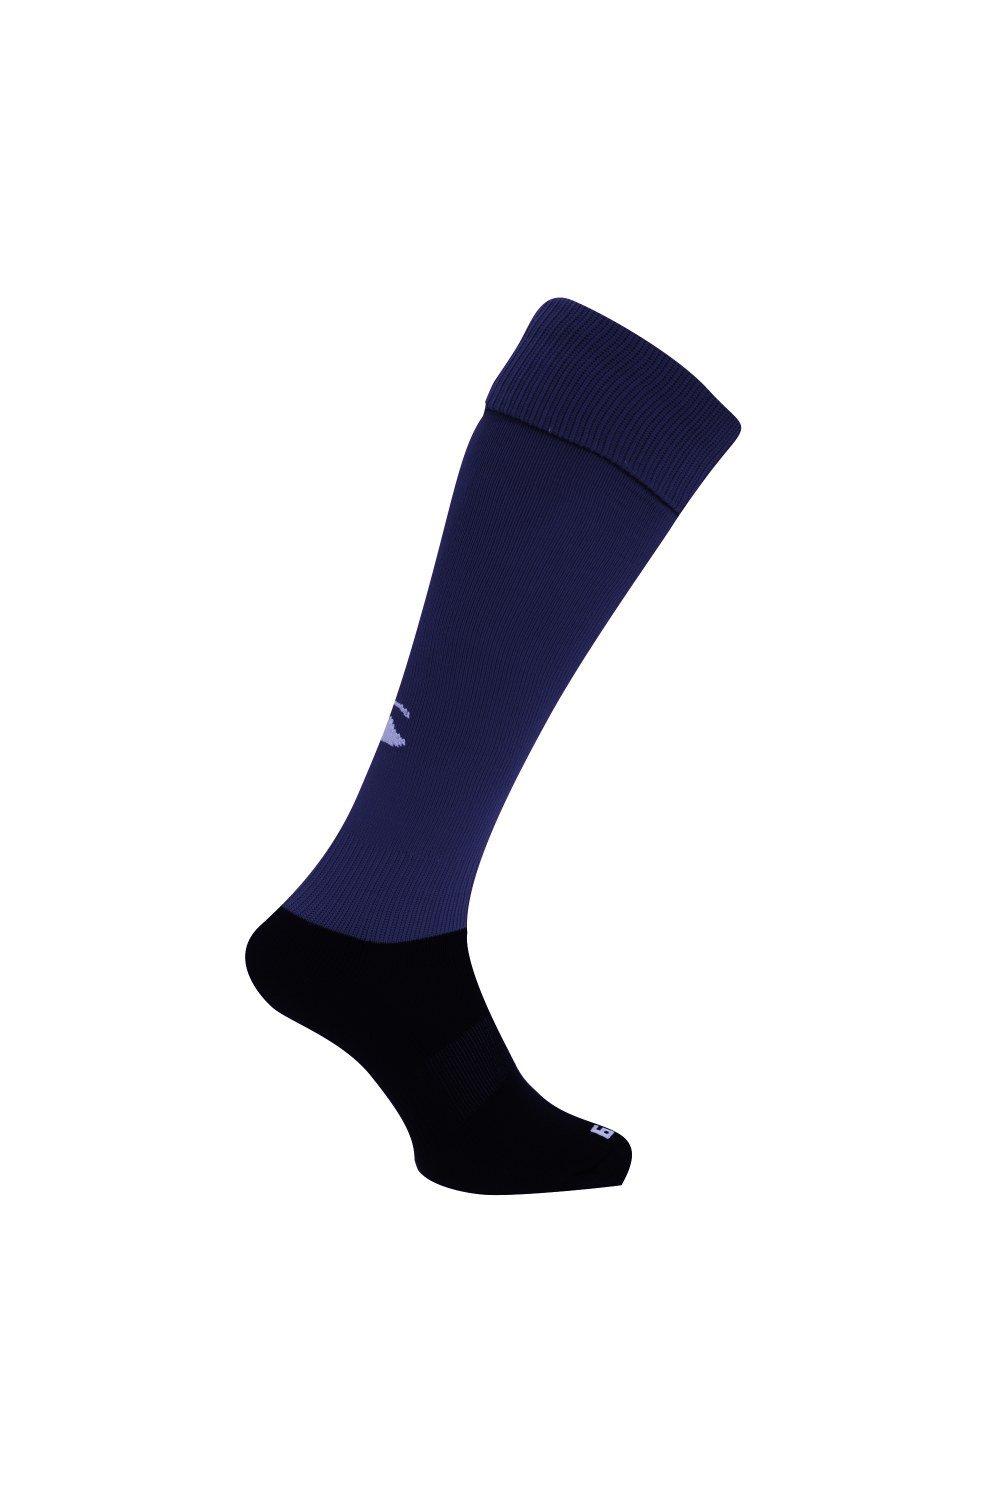 Спортивные носки для игры в регби Canterbury, темно-синий спортивные брюки overcome с контрастными деталями